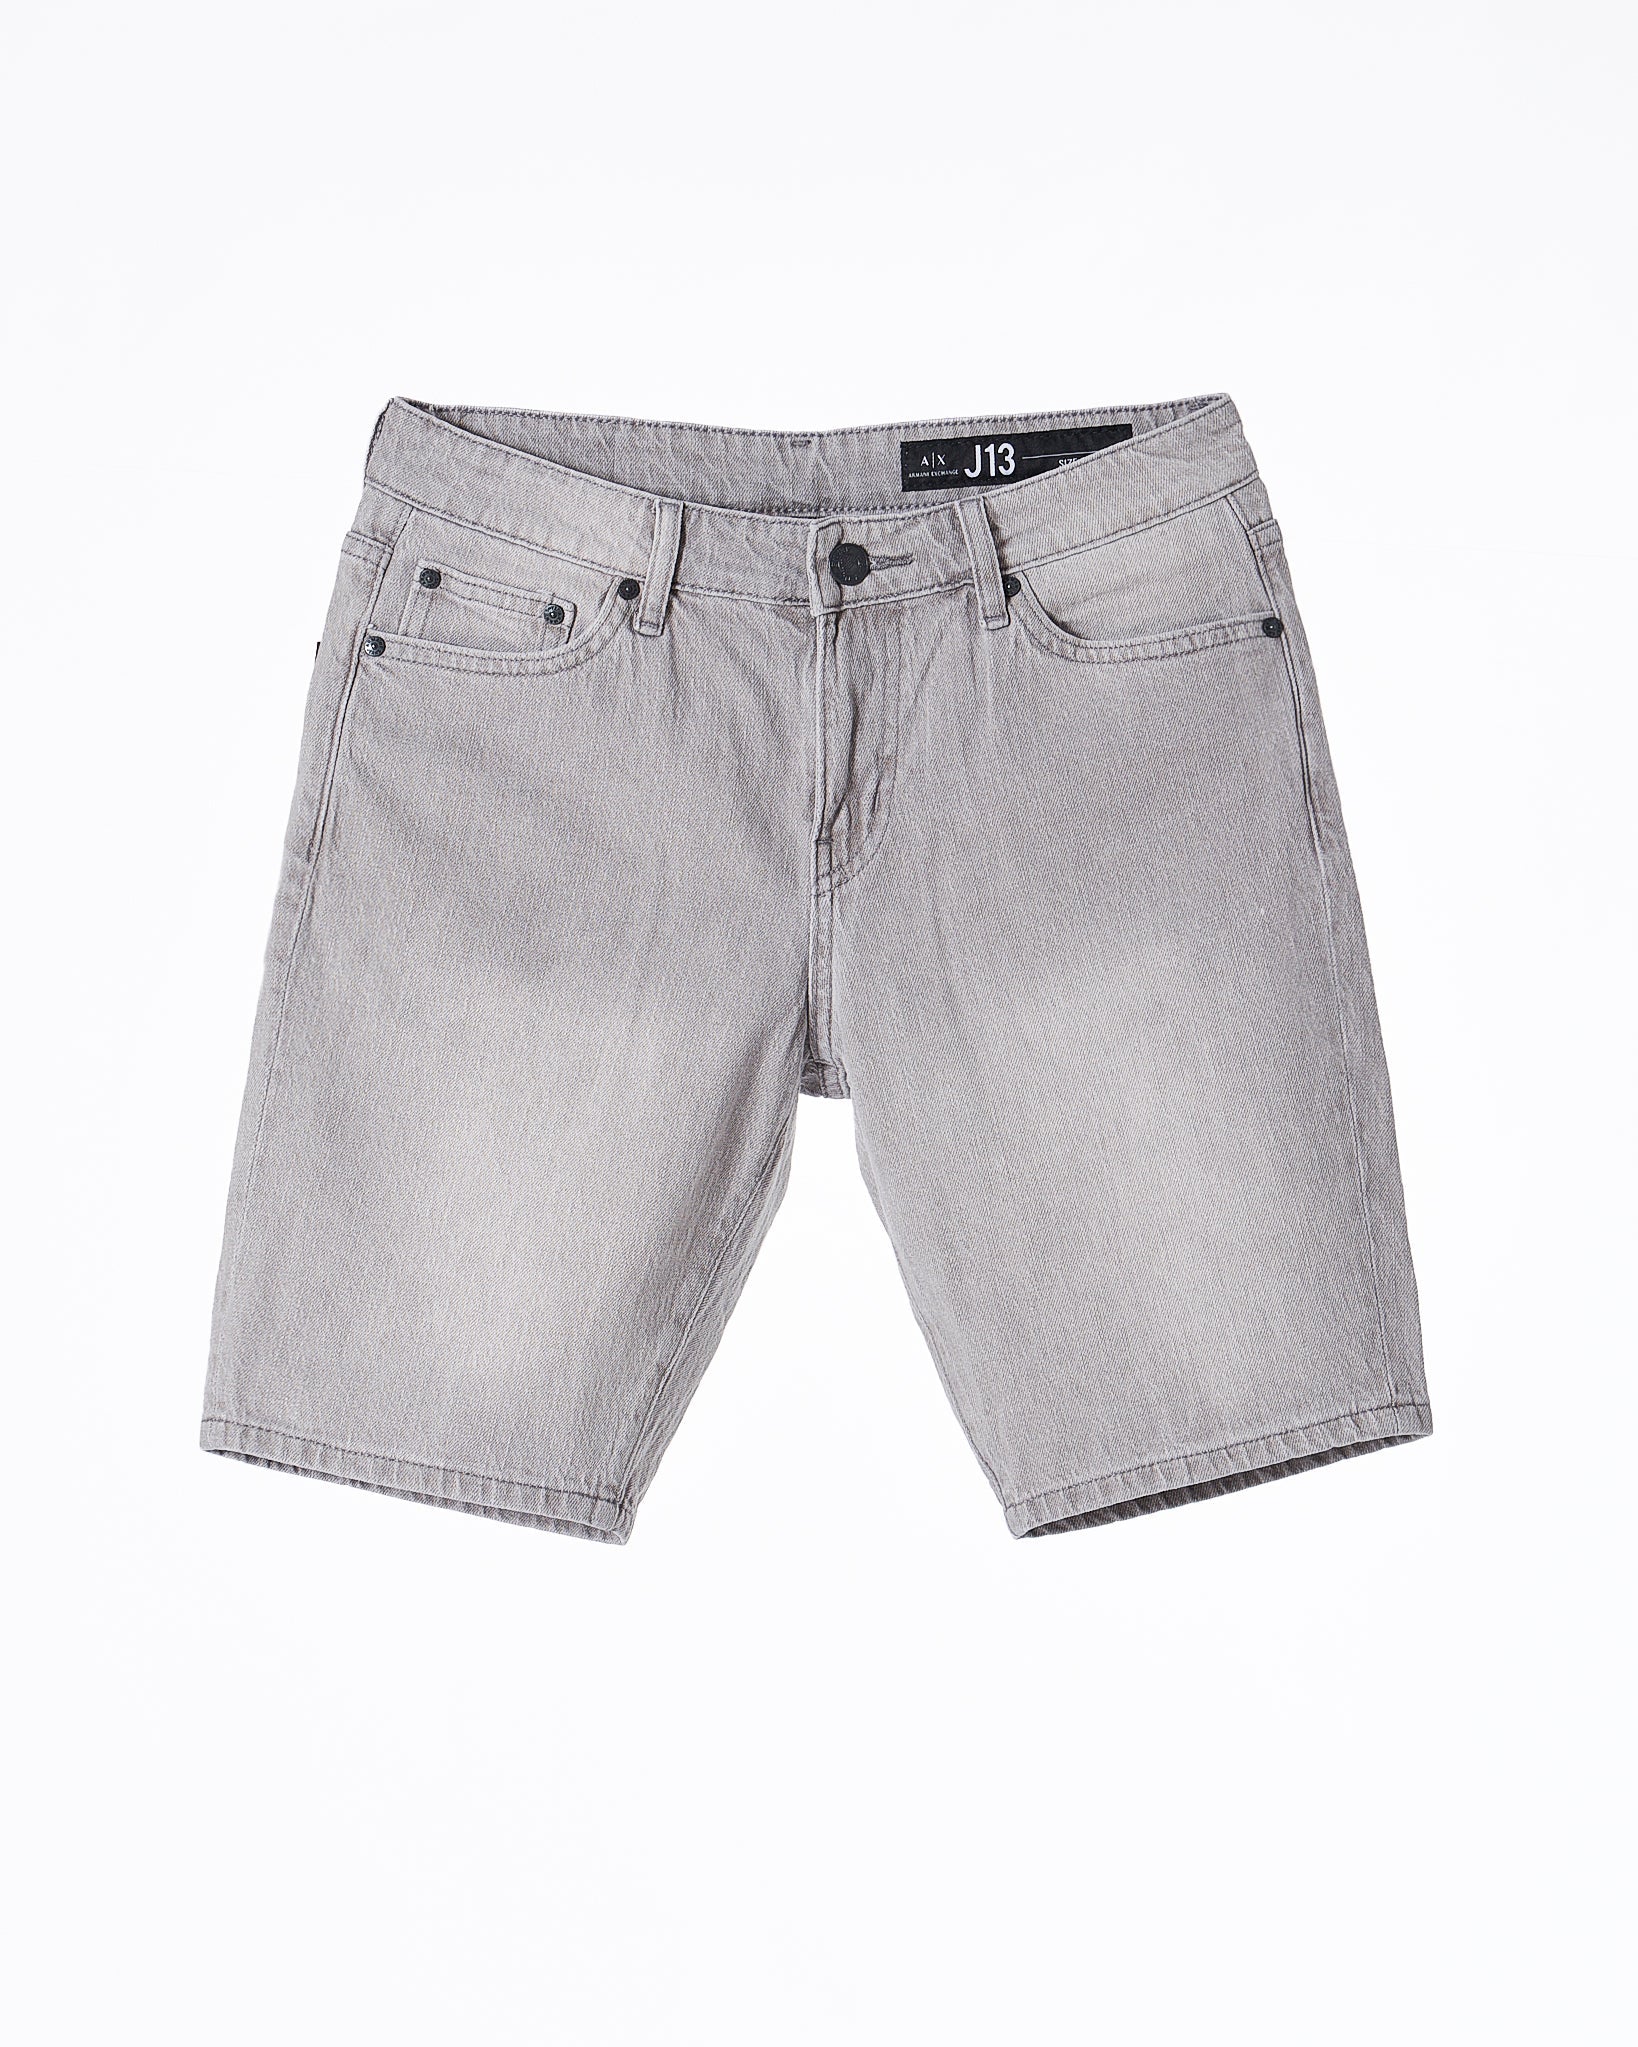 ARM Men Grey Short Jeans 18.90 - MOI OUTFIT